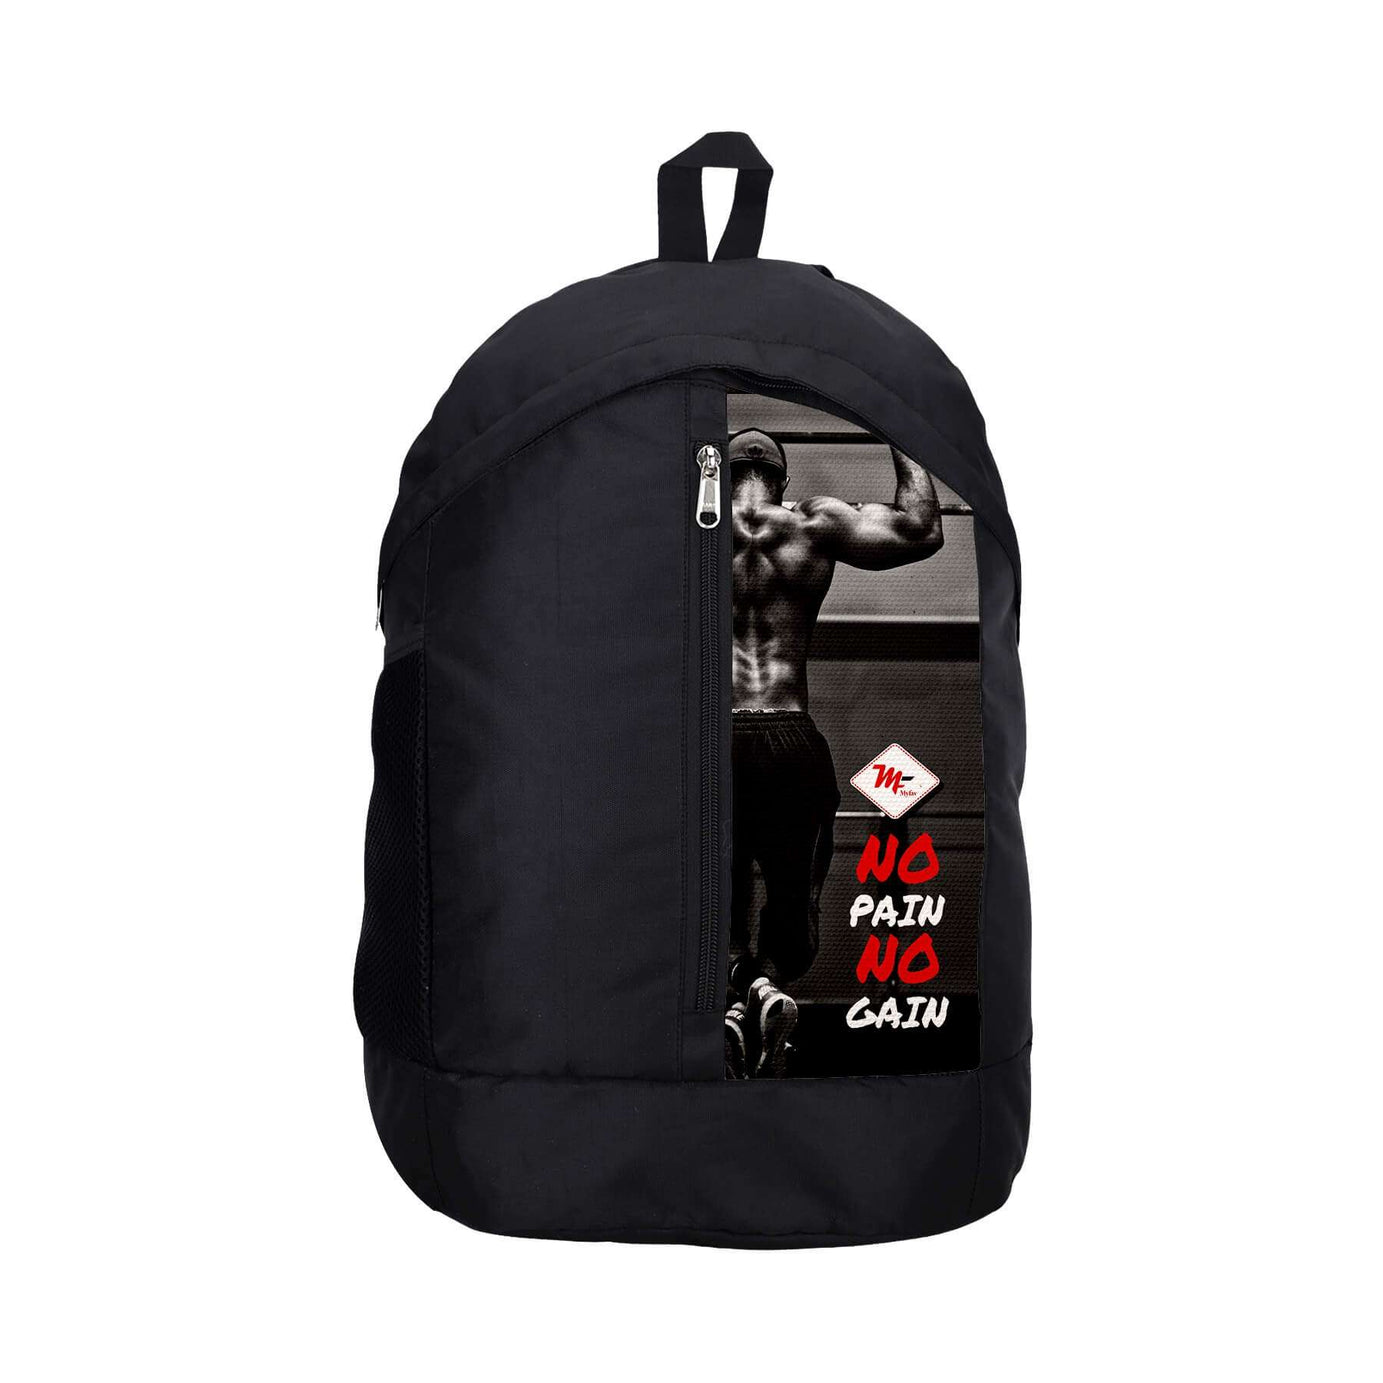 My Fav 21 L Black Laptop Backpack for Men Women / College Bag for Boys Girls / Office Bag